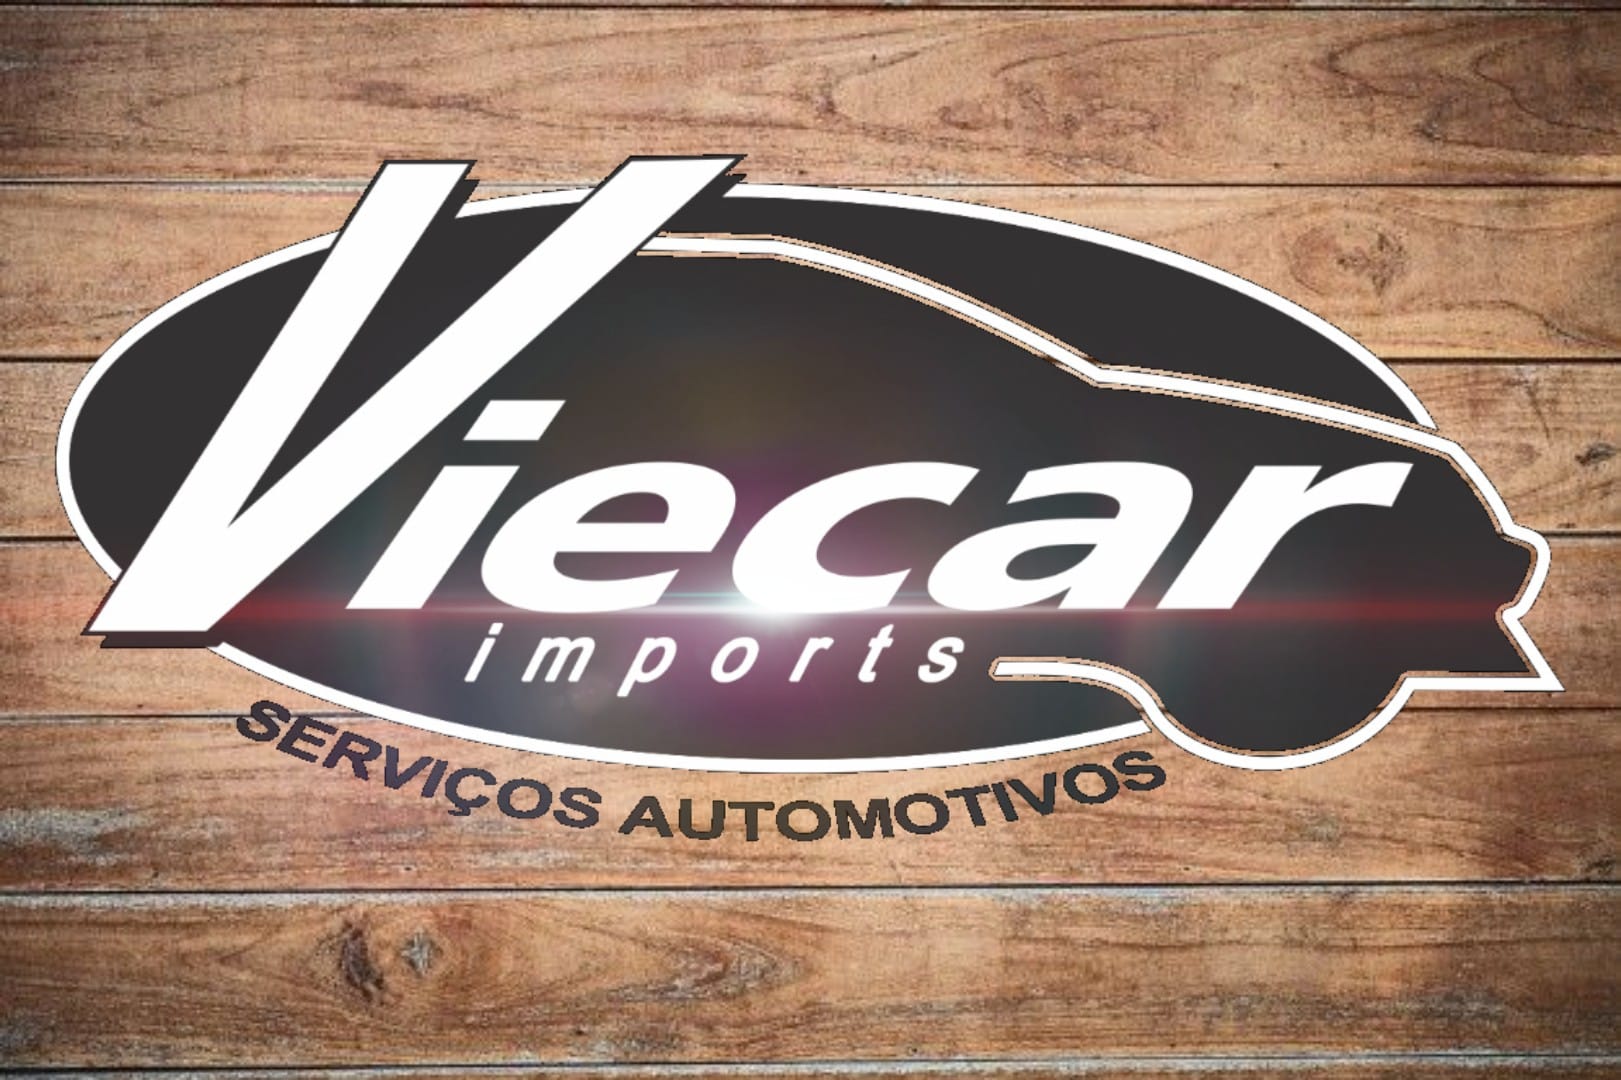 Viecar Import's